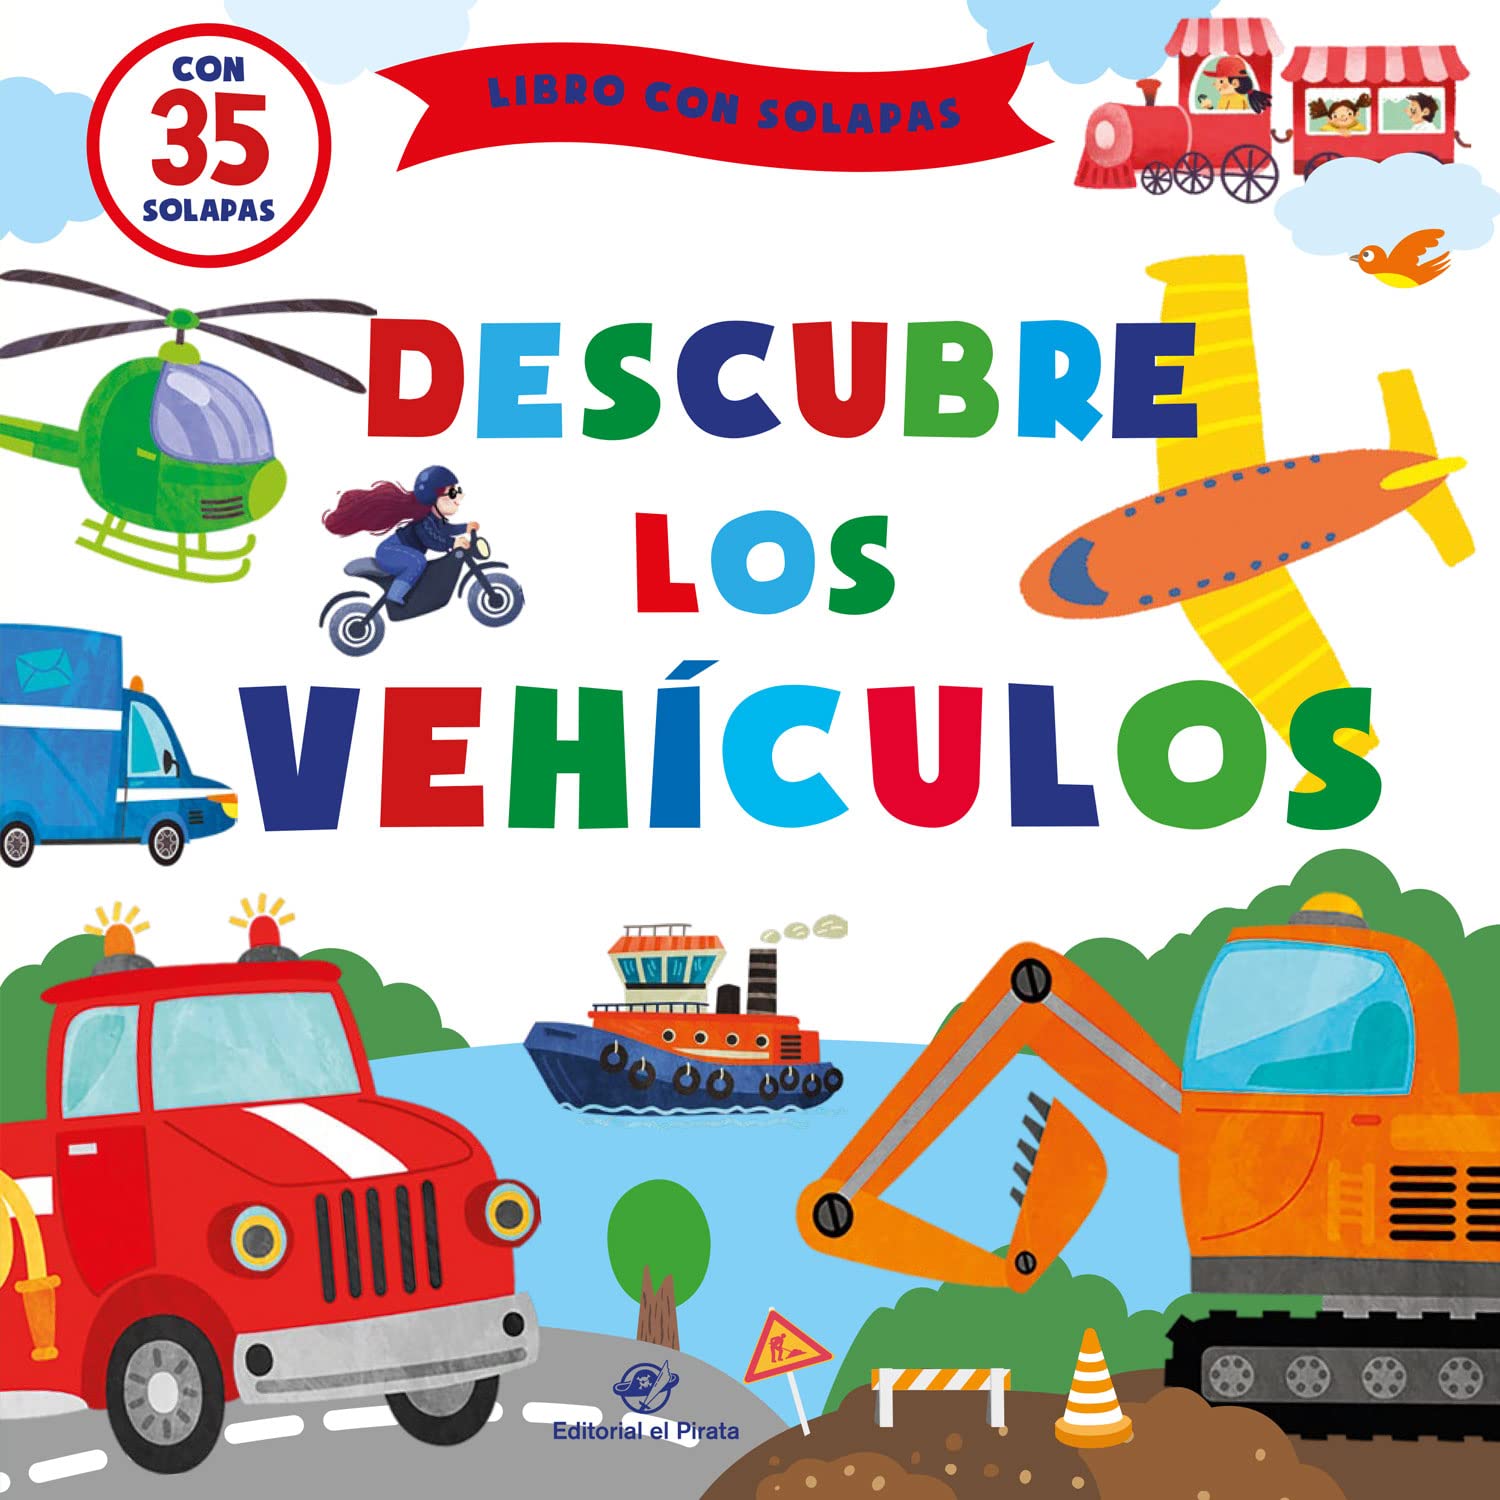 Descubre los vehículos: Cuentos infantiles 1-4 años con solapas: 3 (Cuentos para aprender tocando) - A board book for babies with flaps to discover vehicles in Spanish